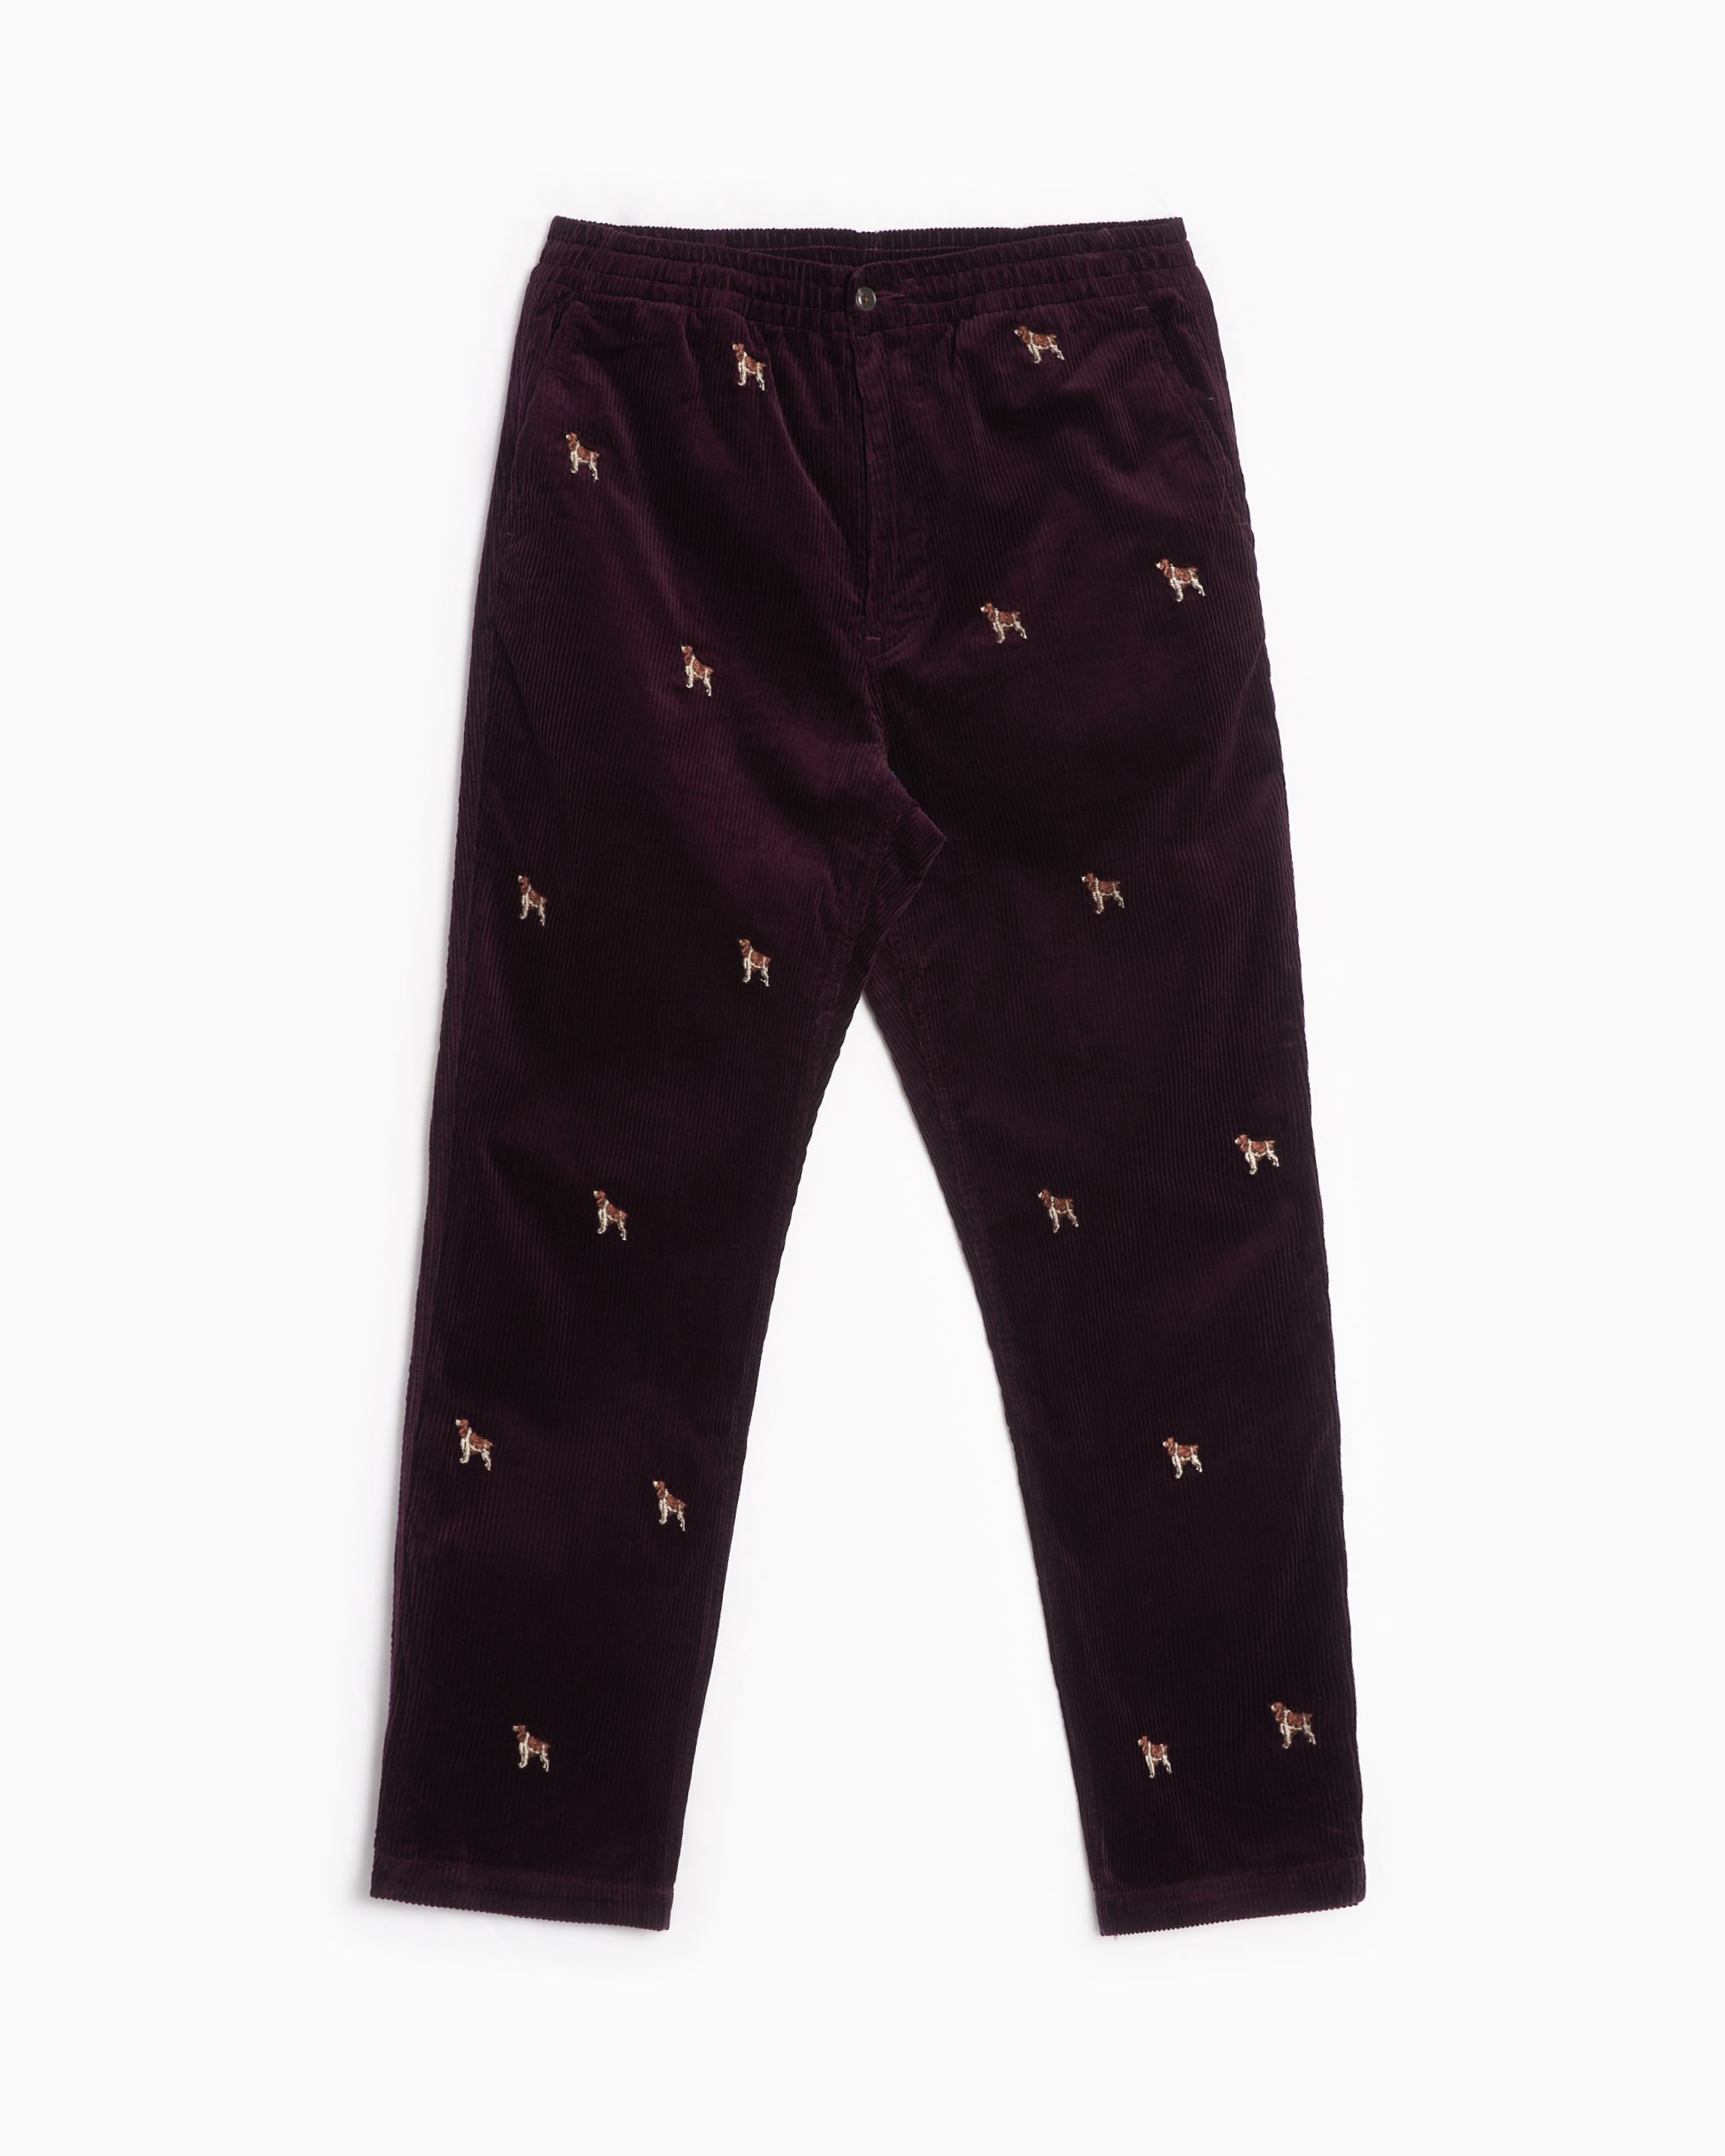 Polo Ralph Lauren Men's Prepster Flat Front Pants Purple